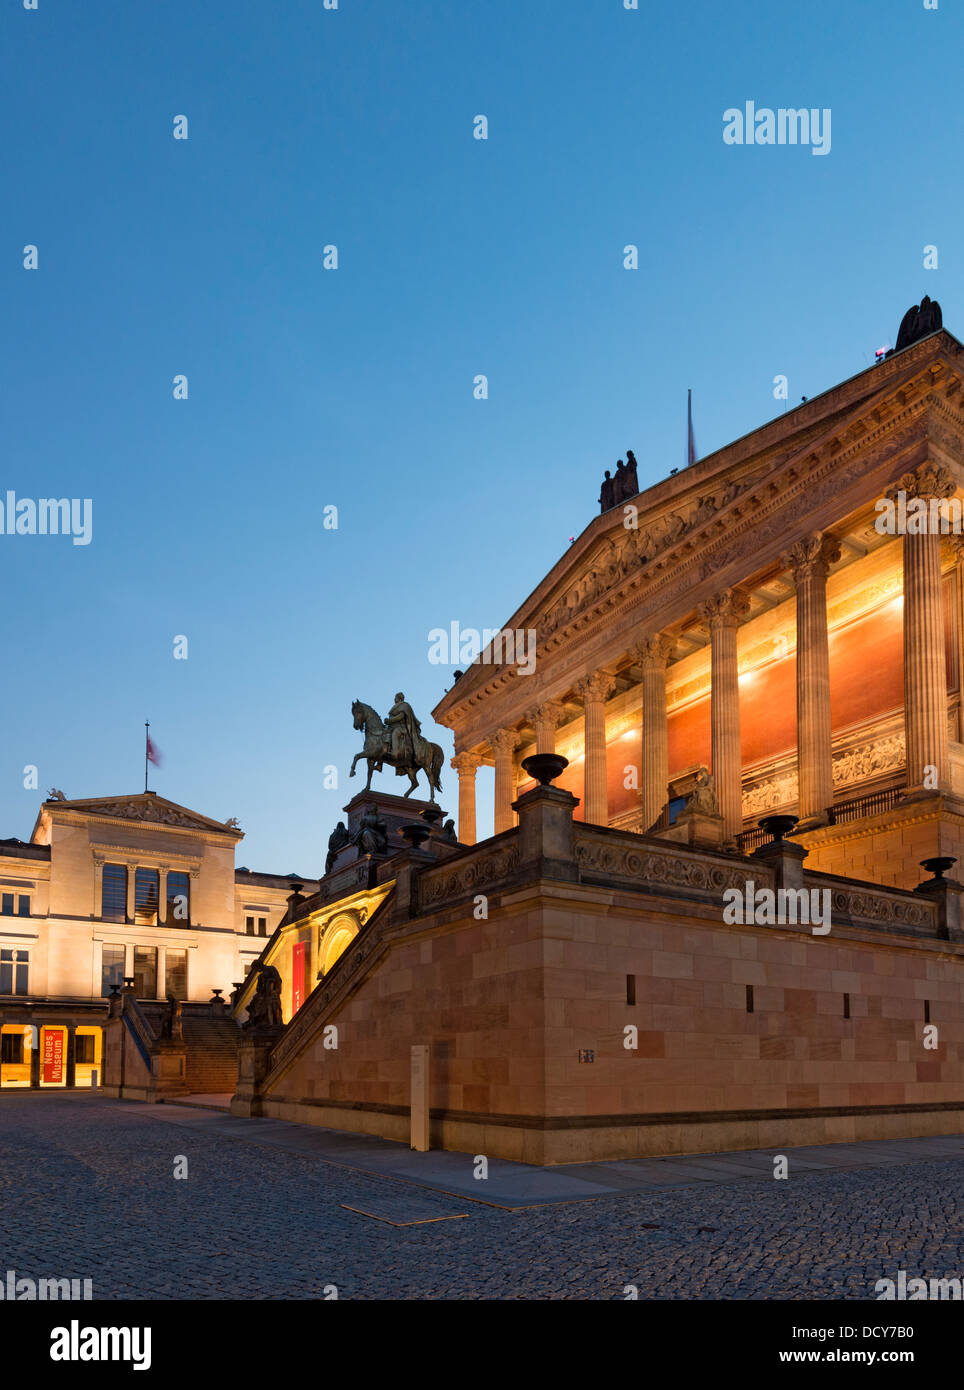 Vista notturna di Alte Nationalgalerie sulla destra e il Neues Museum sull isola dei musei a Berlino Germania Foto Stock